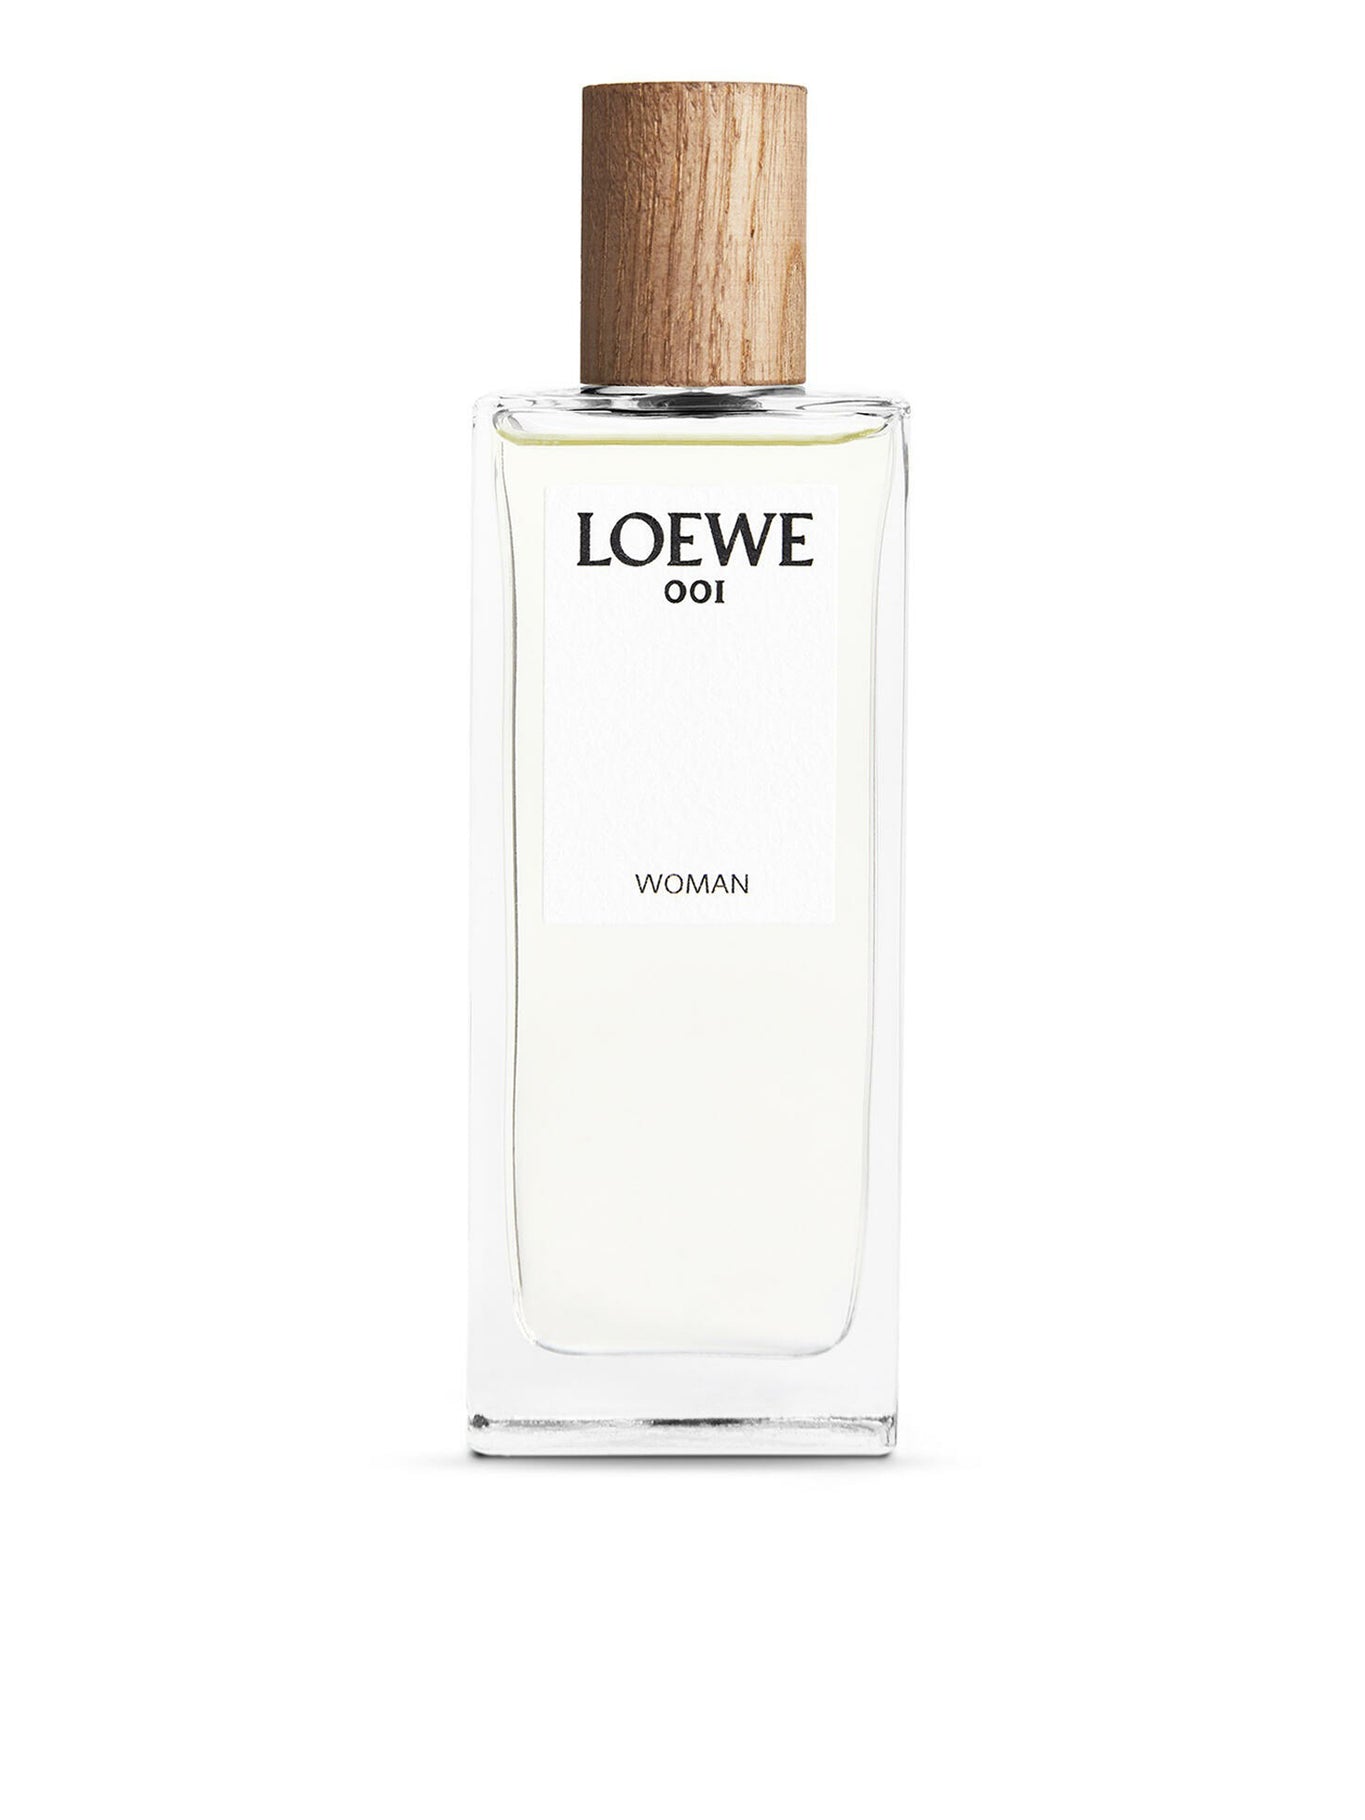 LOEWE 001 Eau de Parfum 100ML